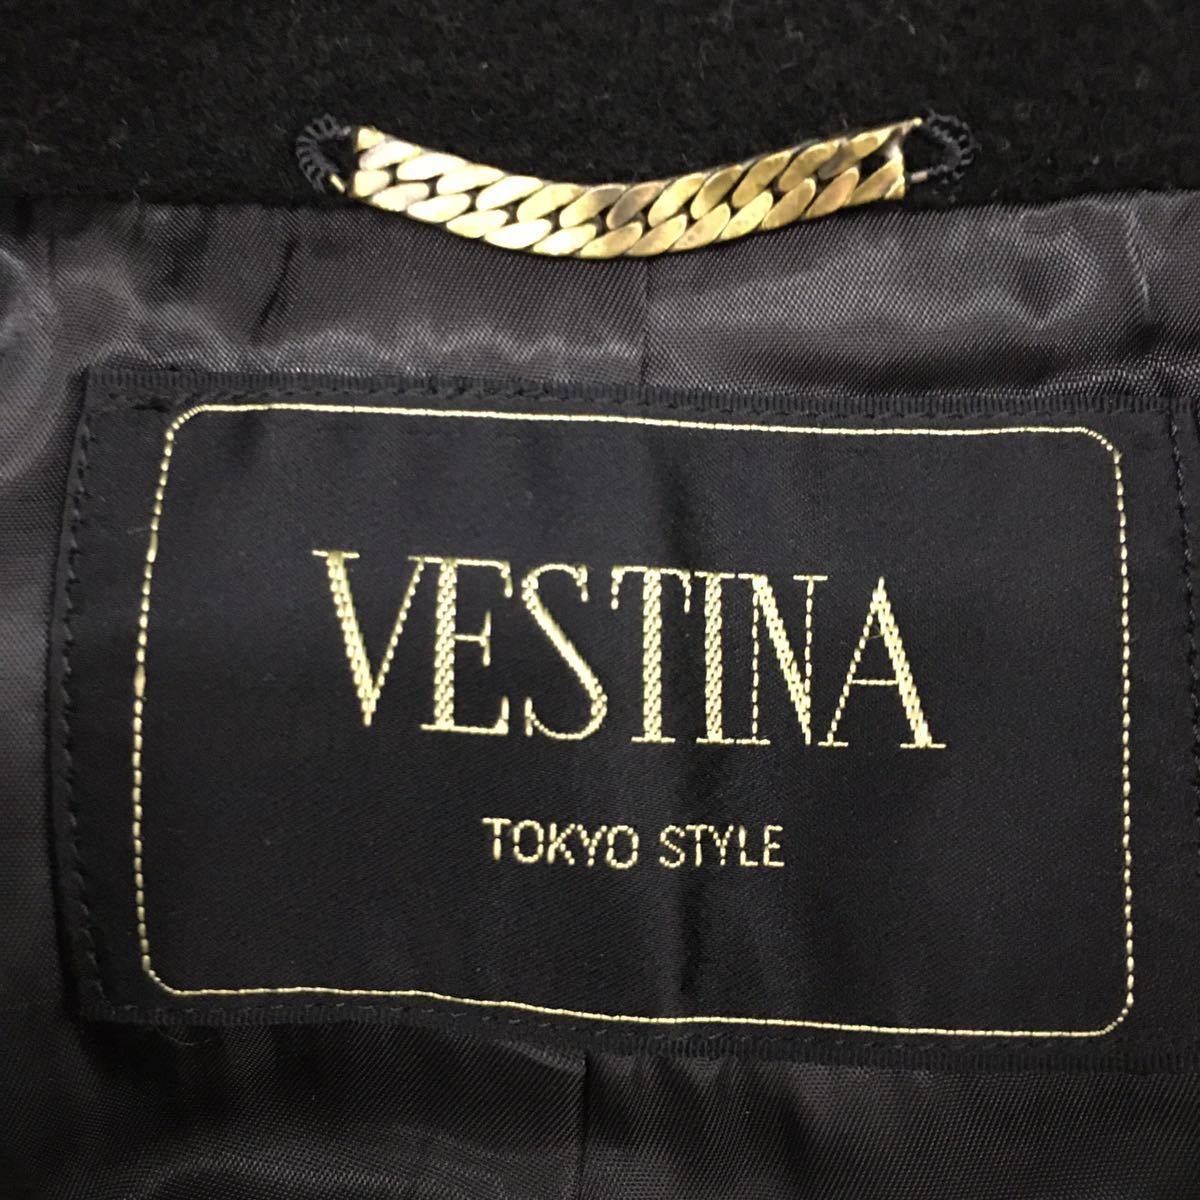 VESTINA TOKYO STYLE CASHMERE ベスティナ 東京スタイル ロングコート ビッグサイズ ウール カシミヤ混 黒